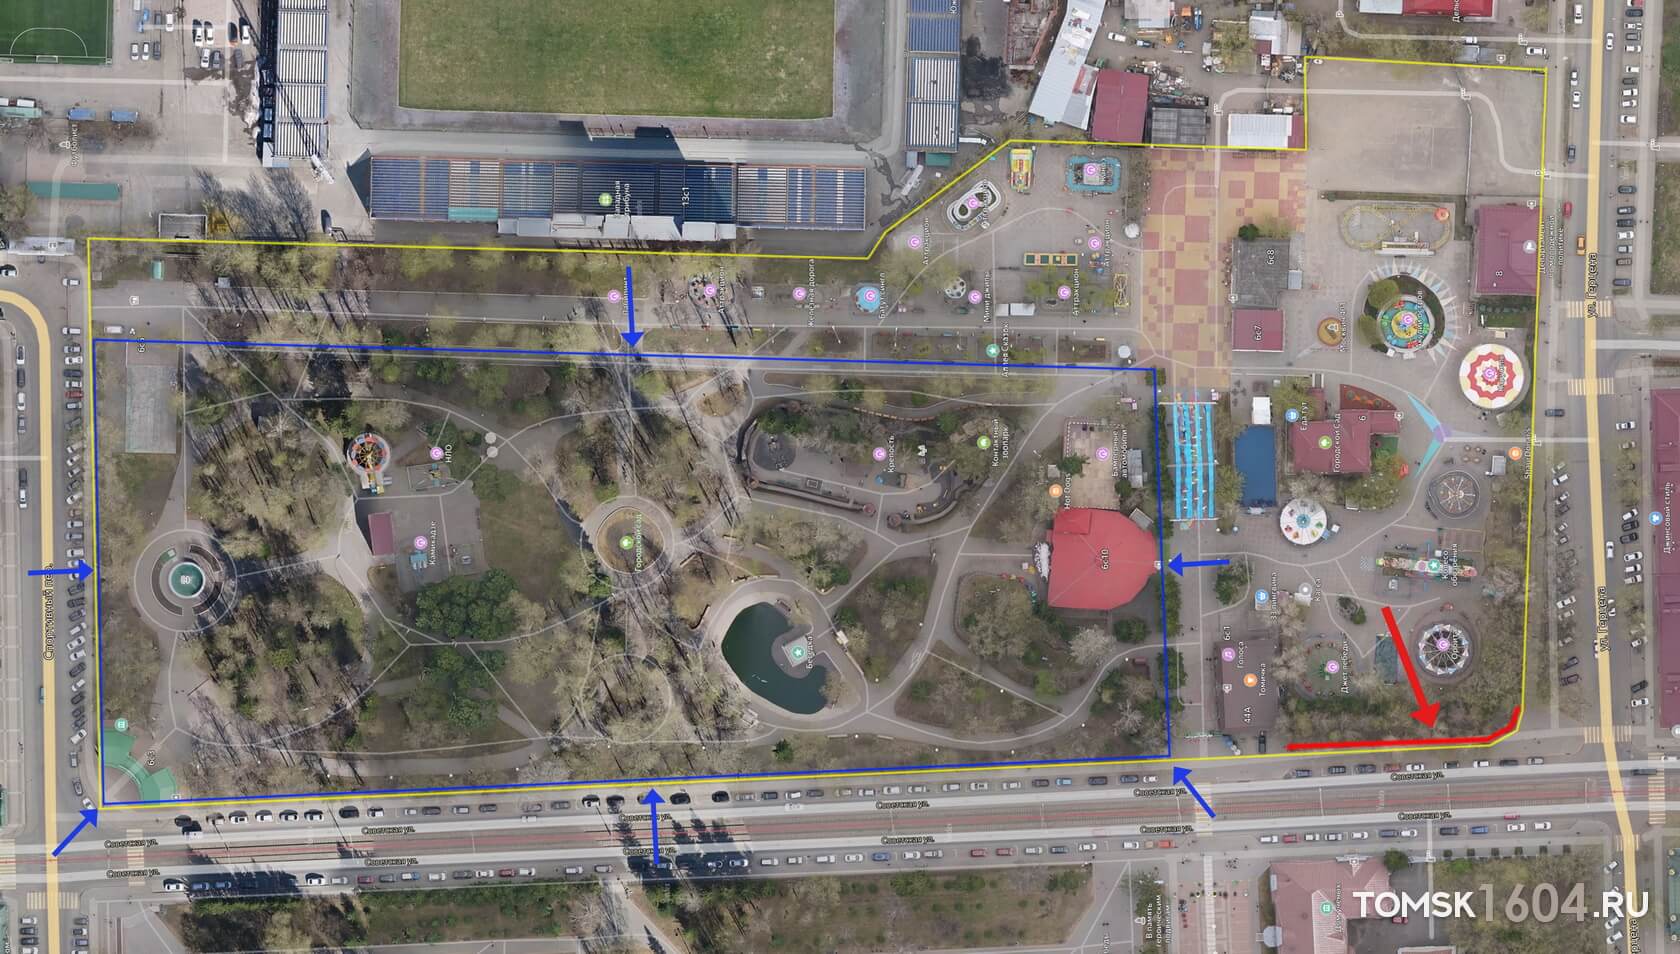 План Городского сада с первоначальными границами (синие) и входами (синие стрелки) и современными границами (желтые). Красной линией и стрелкой указано место, где сохранились секции старинного забора.